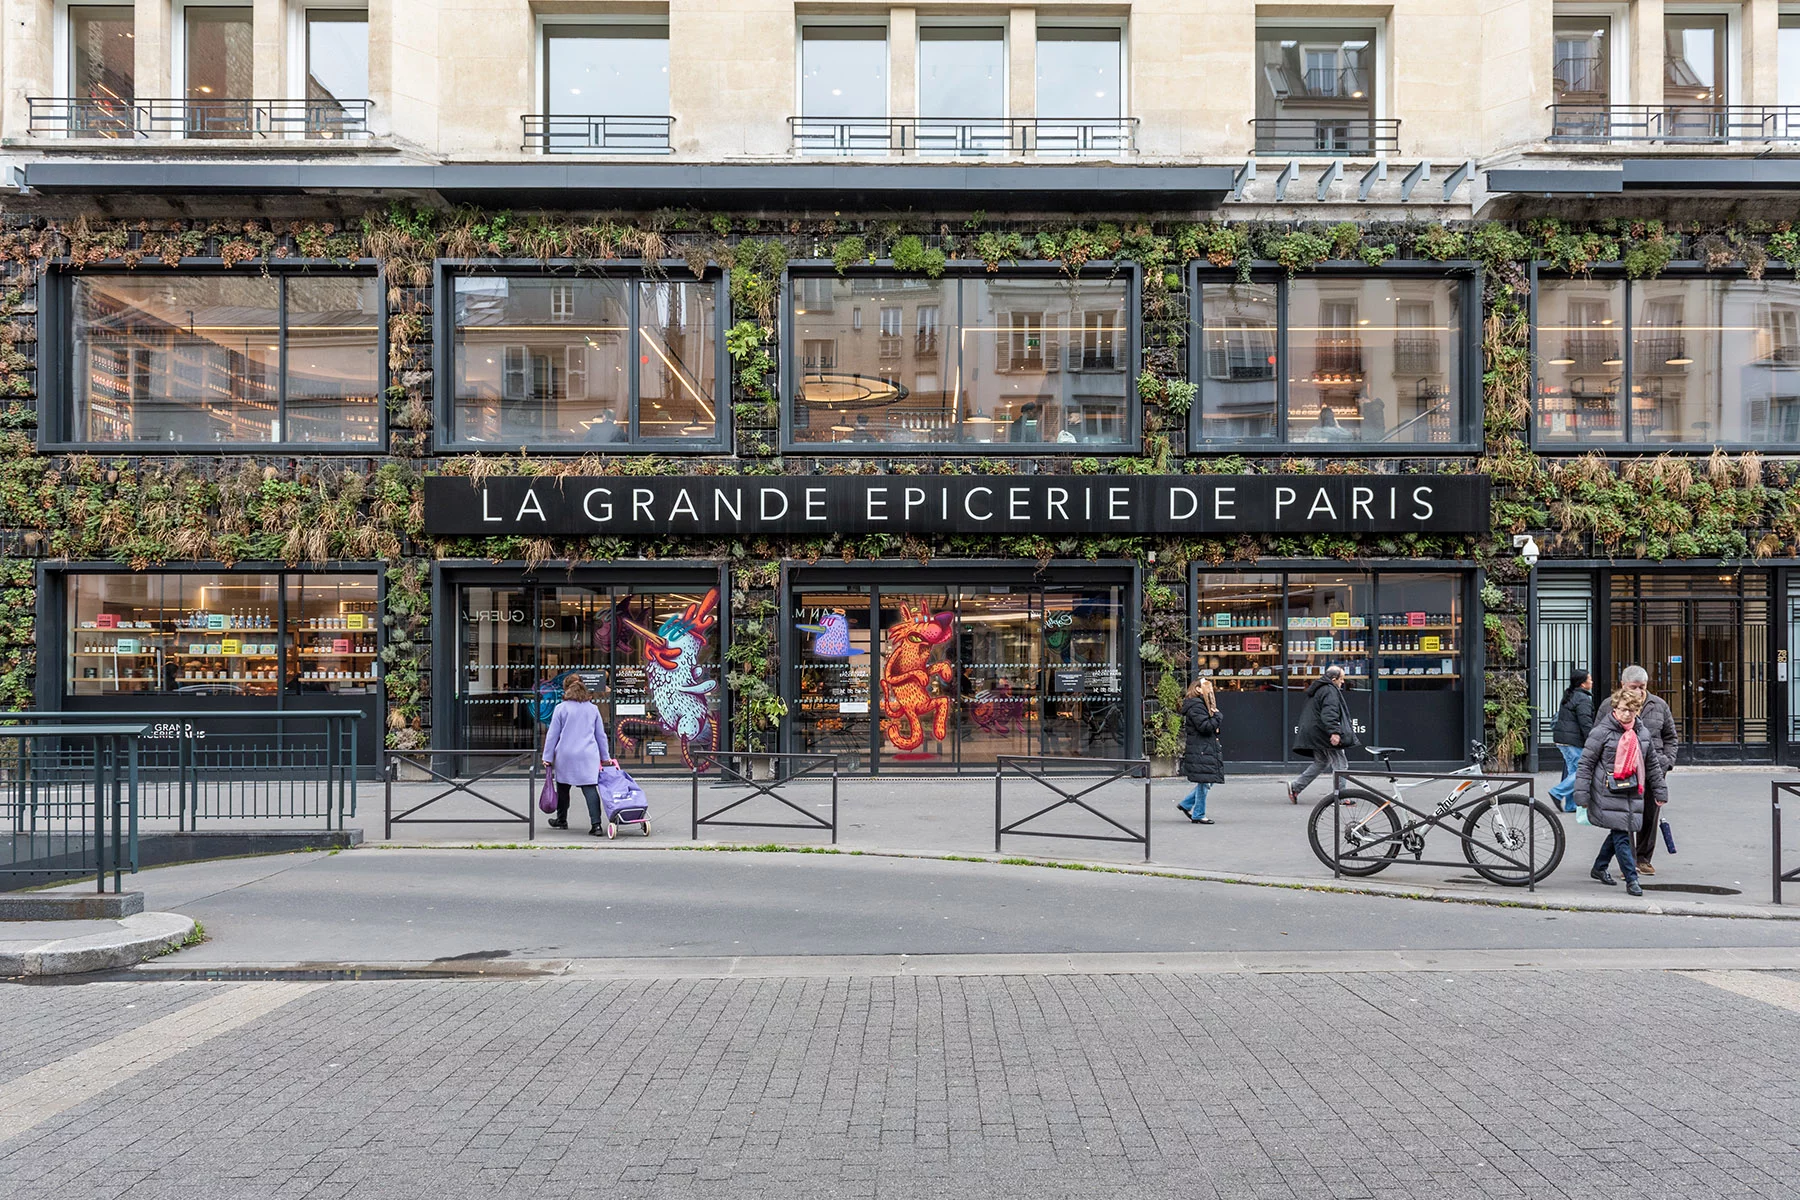 La Grande Epicerie de Paris, in the swanky 16th arrondissement